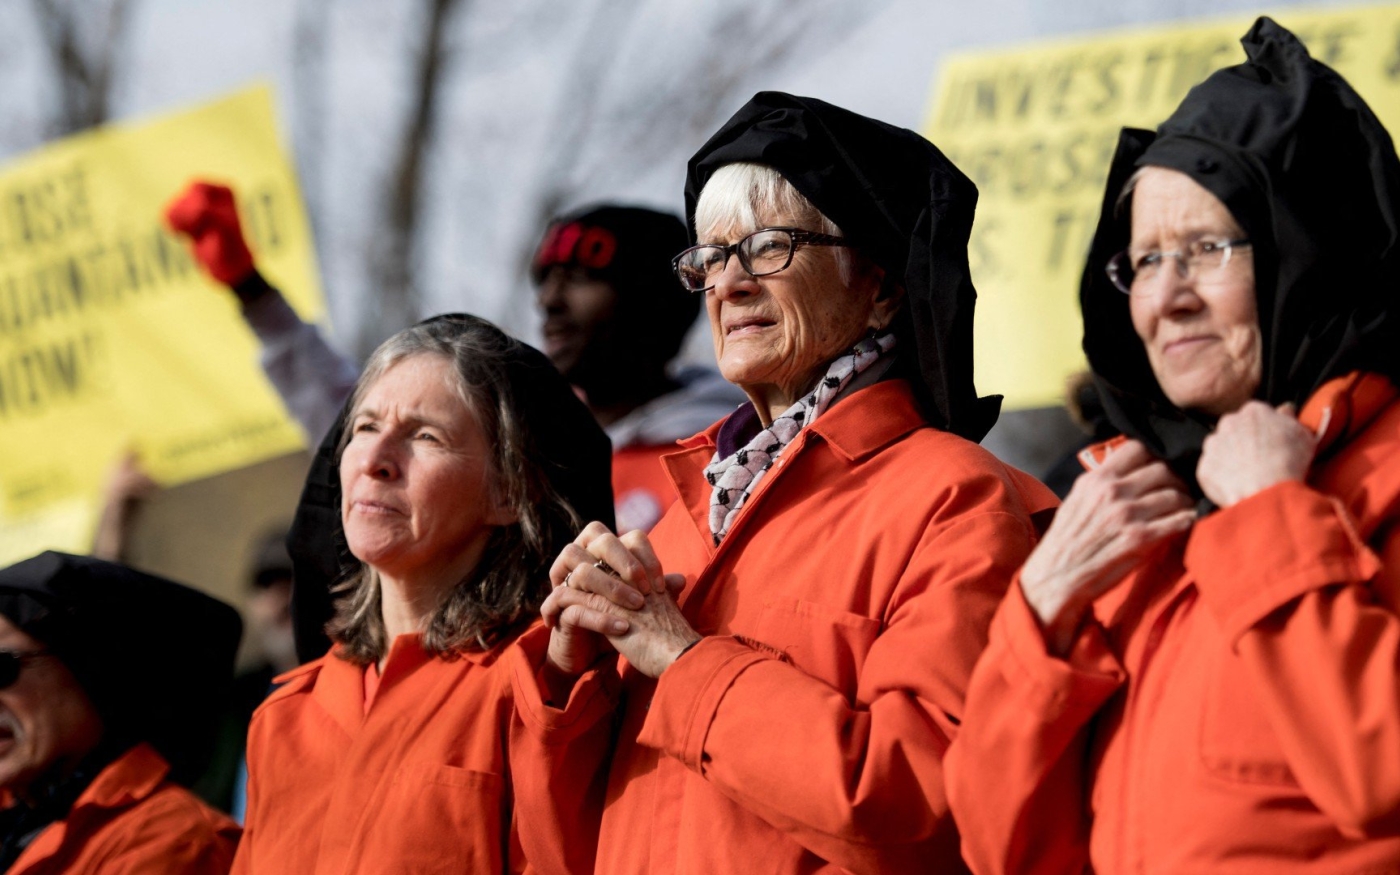 Des activistes protestent contre le camp de détention de Guantánamo lors d’un rassemblement sur Lafayette Square devant la Maison-Blanche à Washington, le 11 janvier 2018 (AFP)